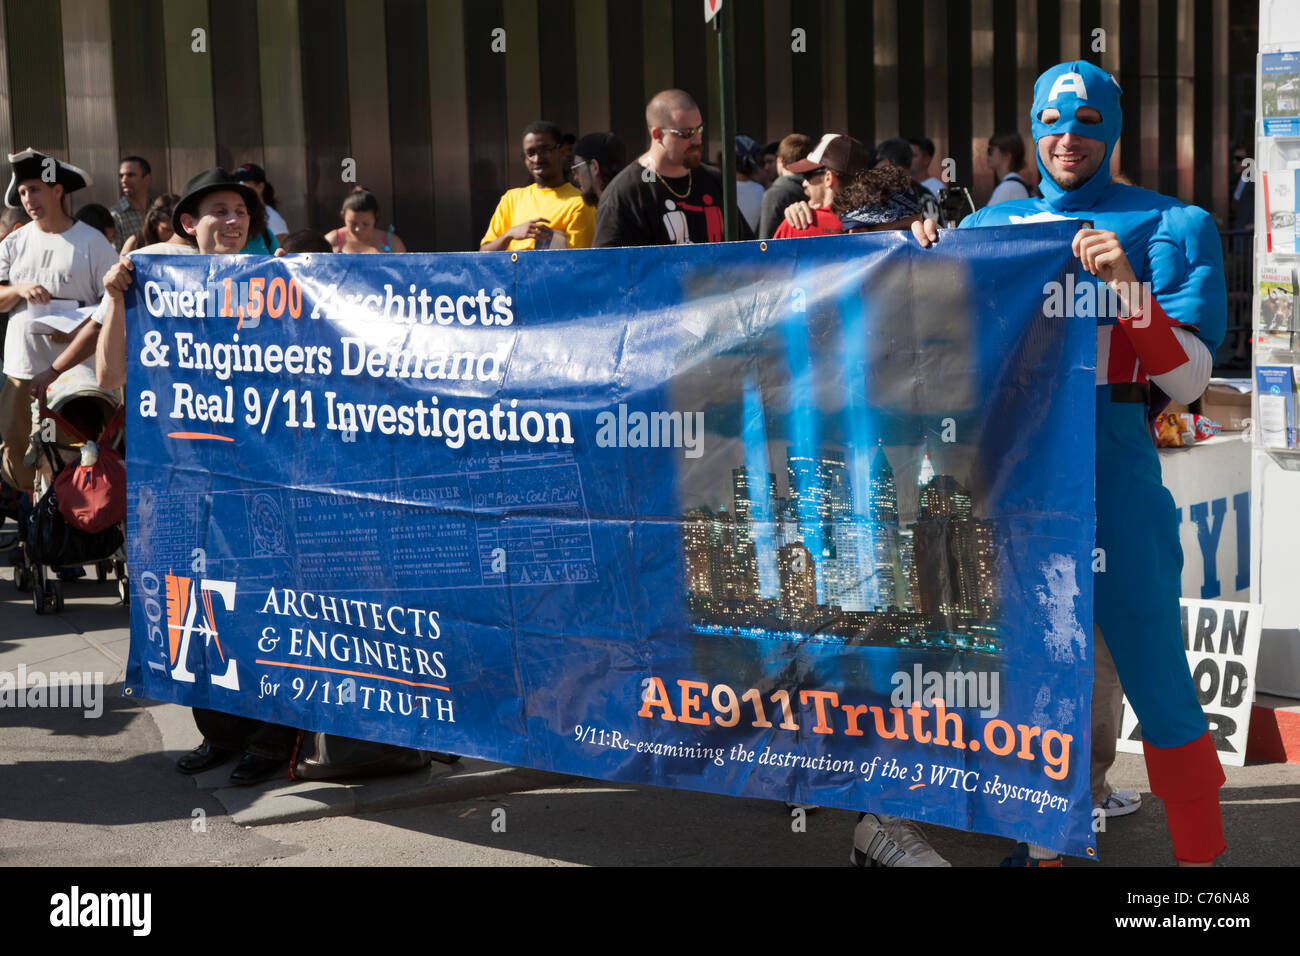 Anhänger des Architekten & Engineers for 9/11 Truth (AE911Truth) halten ein  Banner an der WTC PATH Station Stockfotografie - Alamy